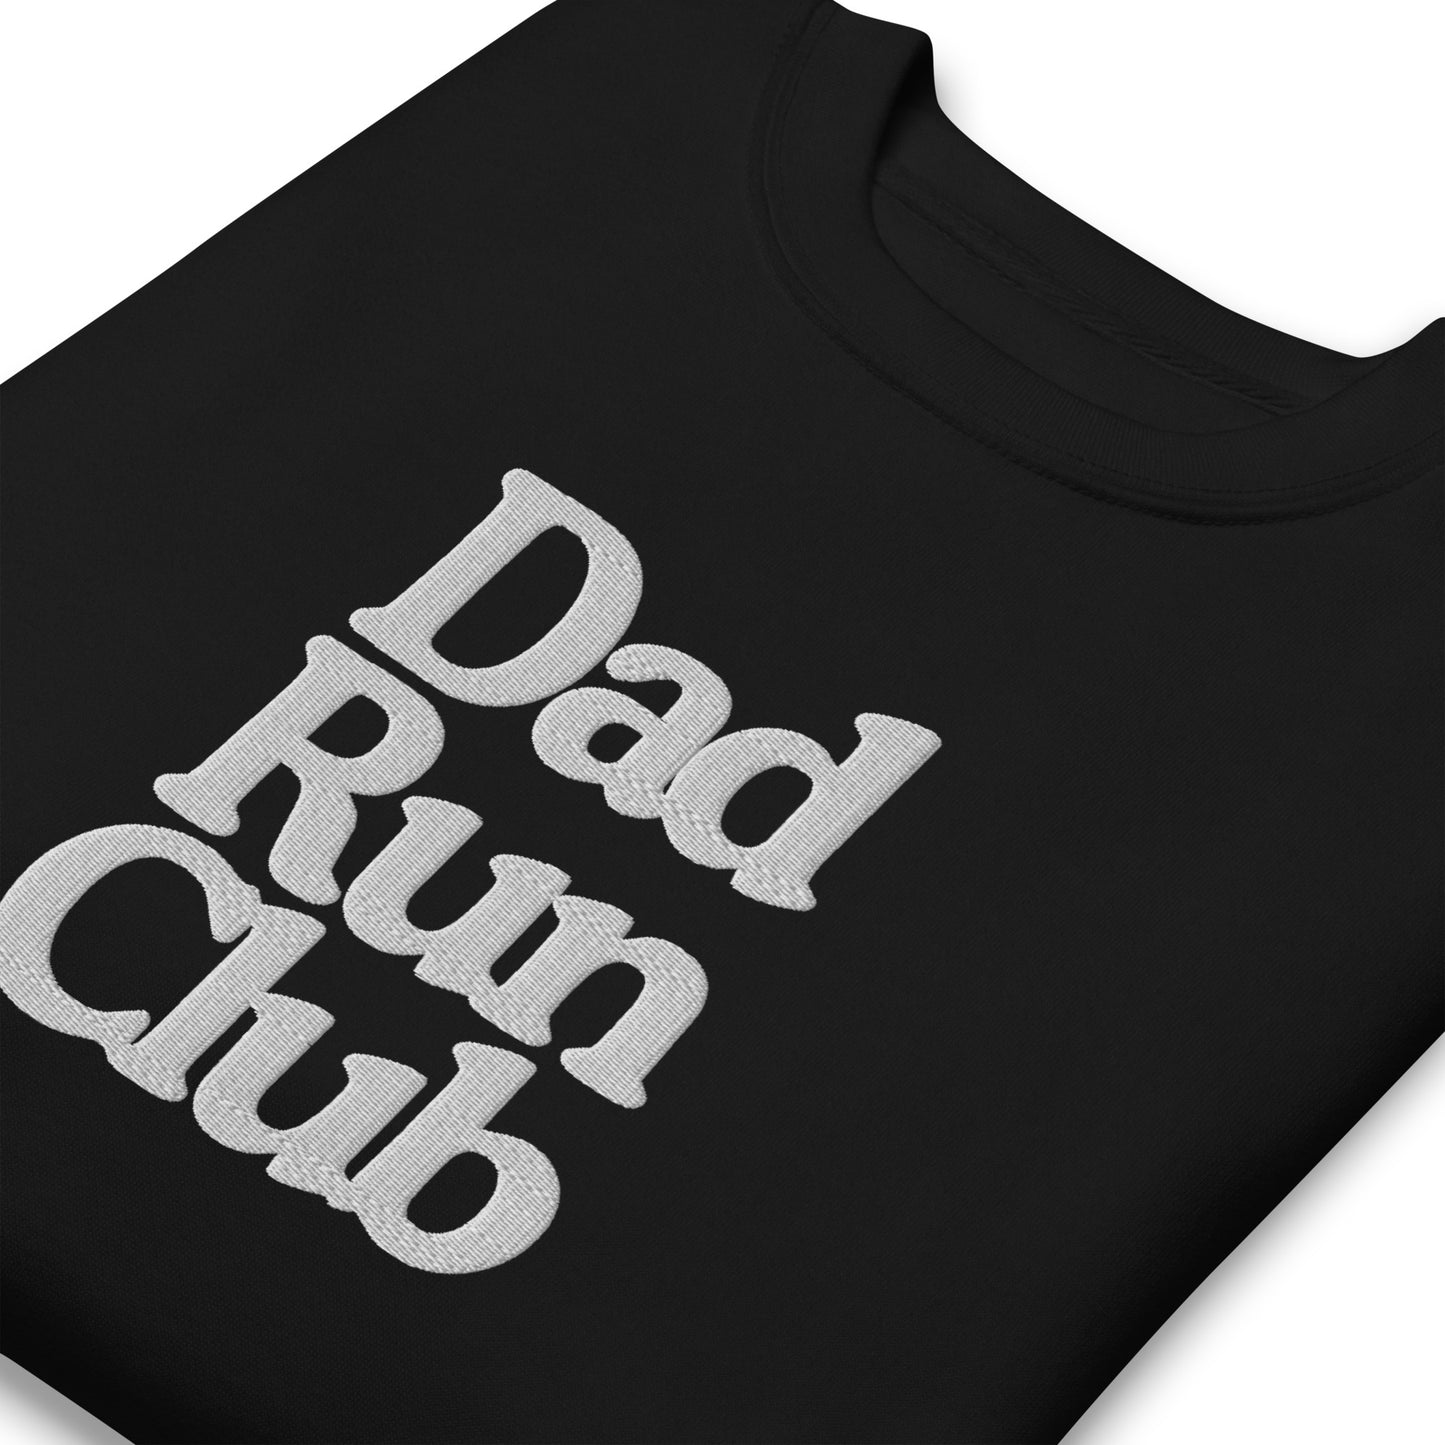 Dad Run Club Crew